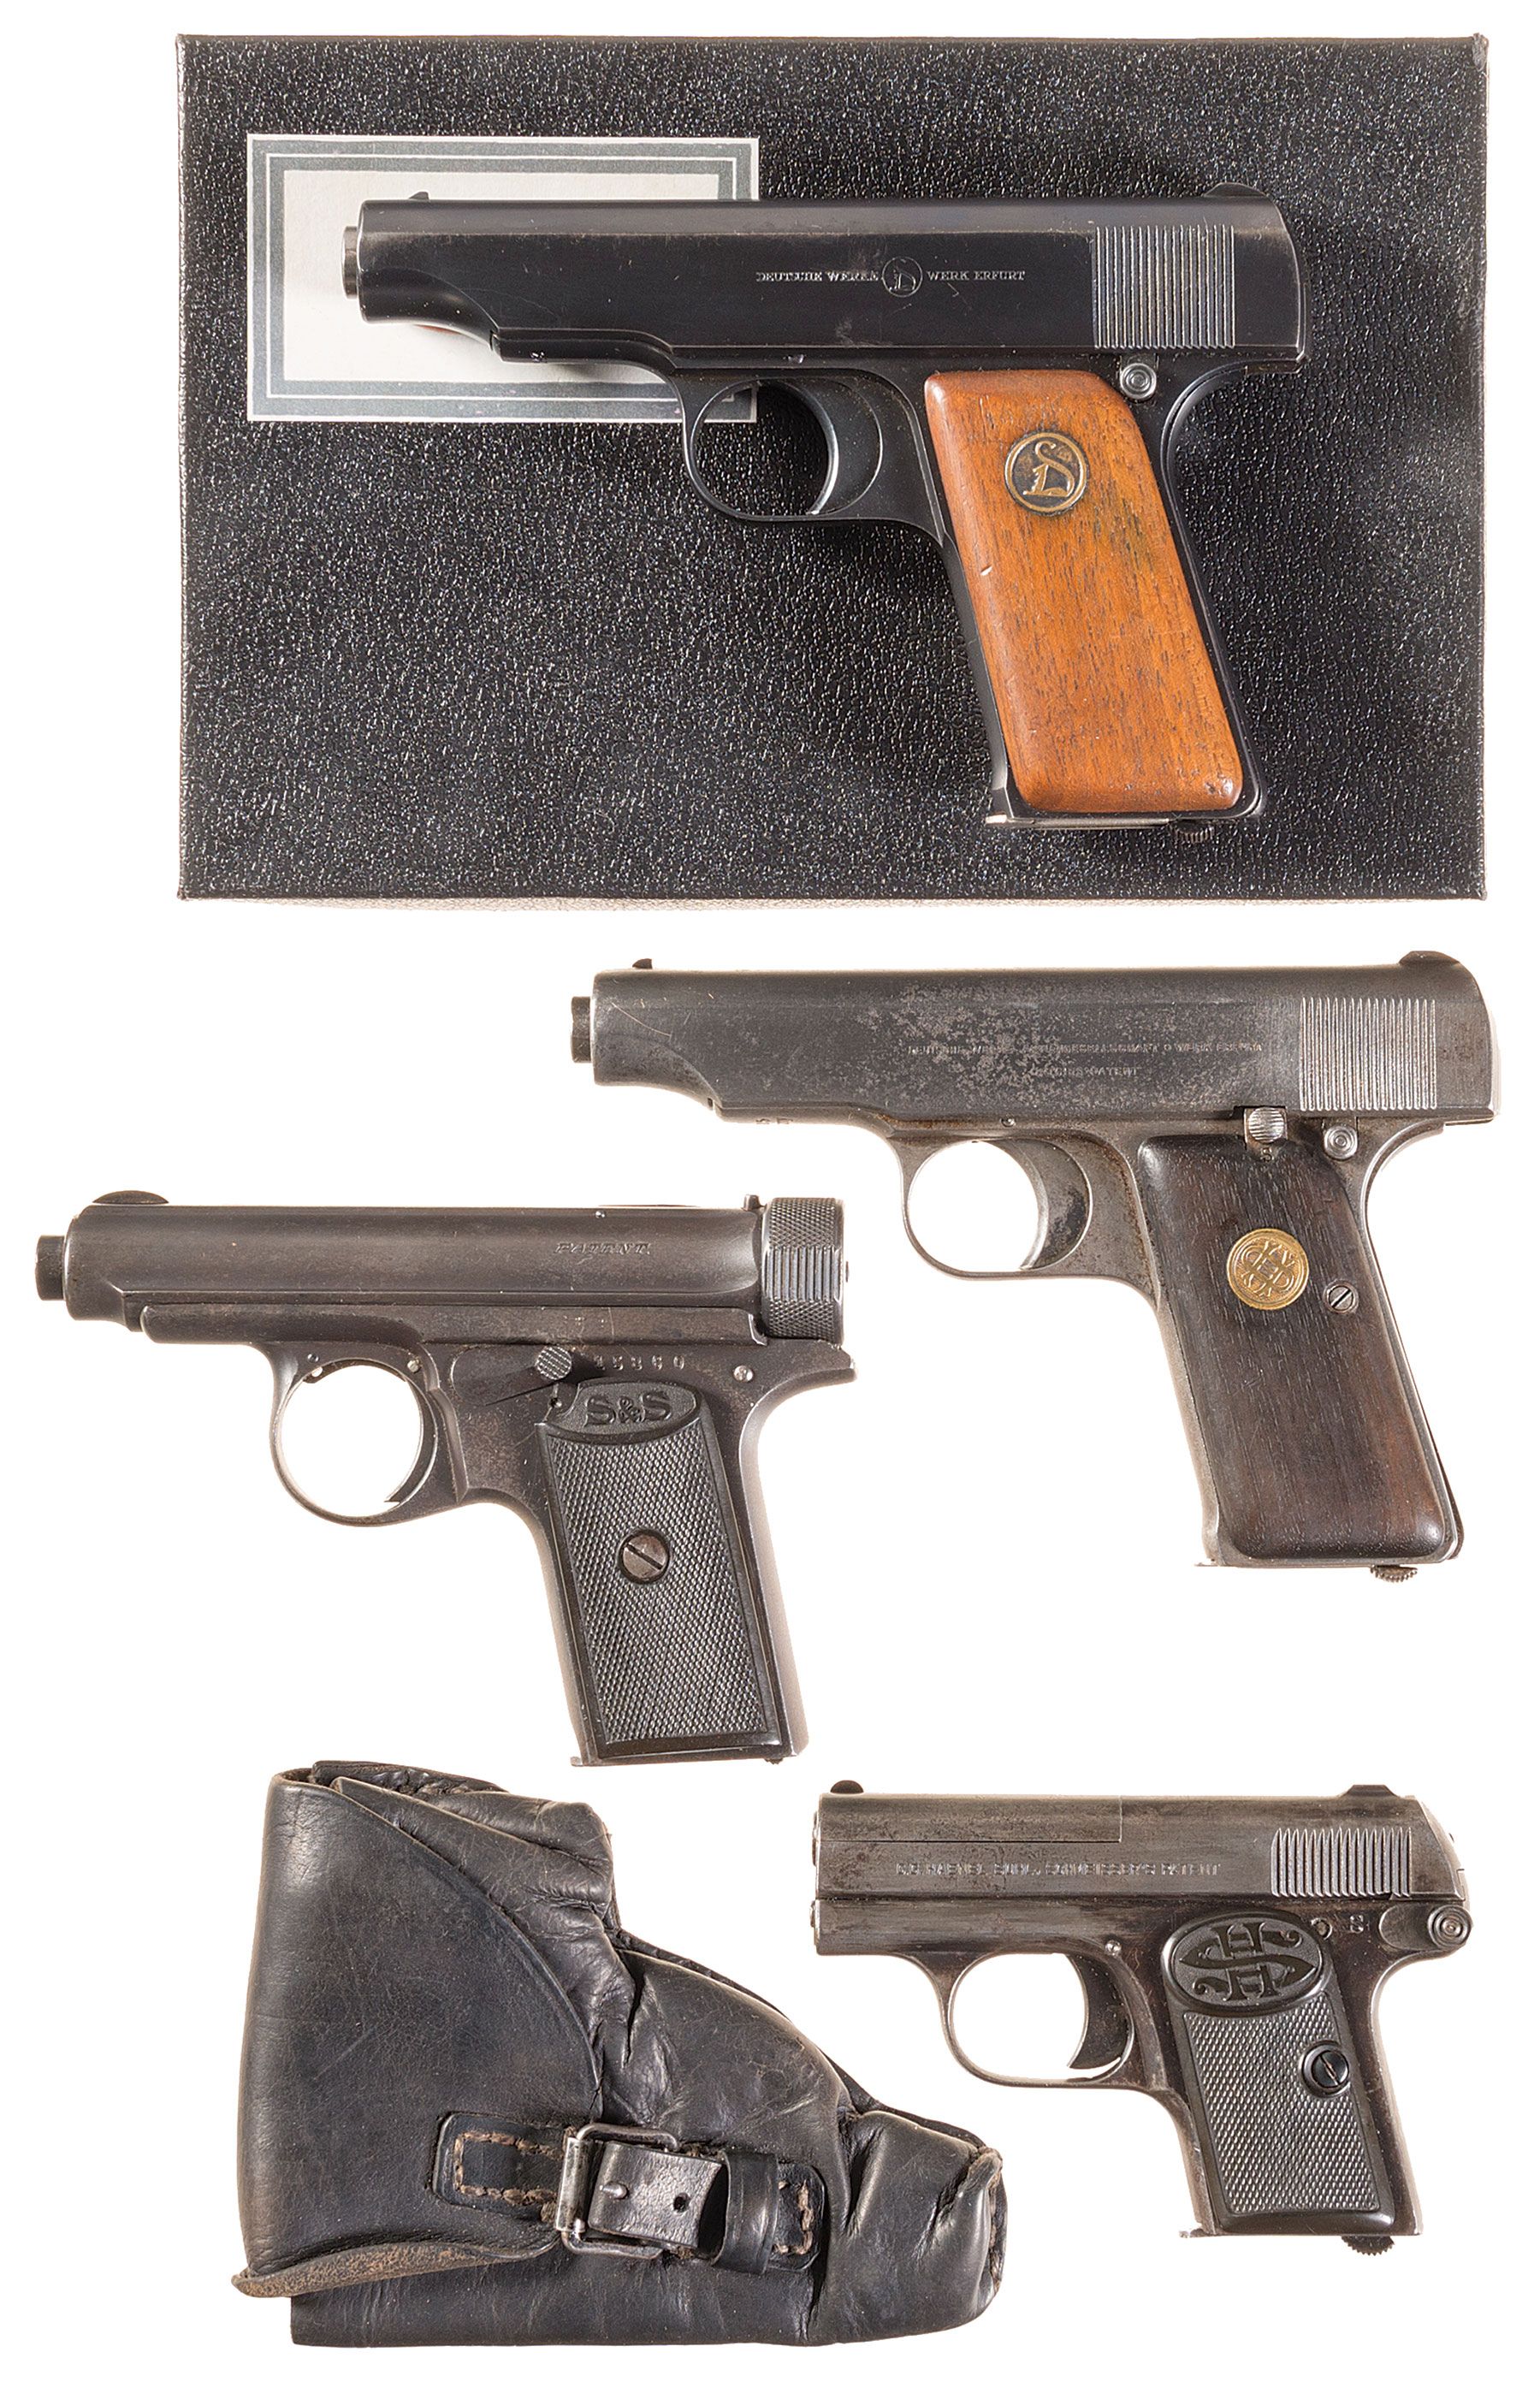 380 pistol clip for the ortgies pistol